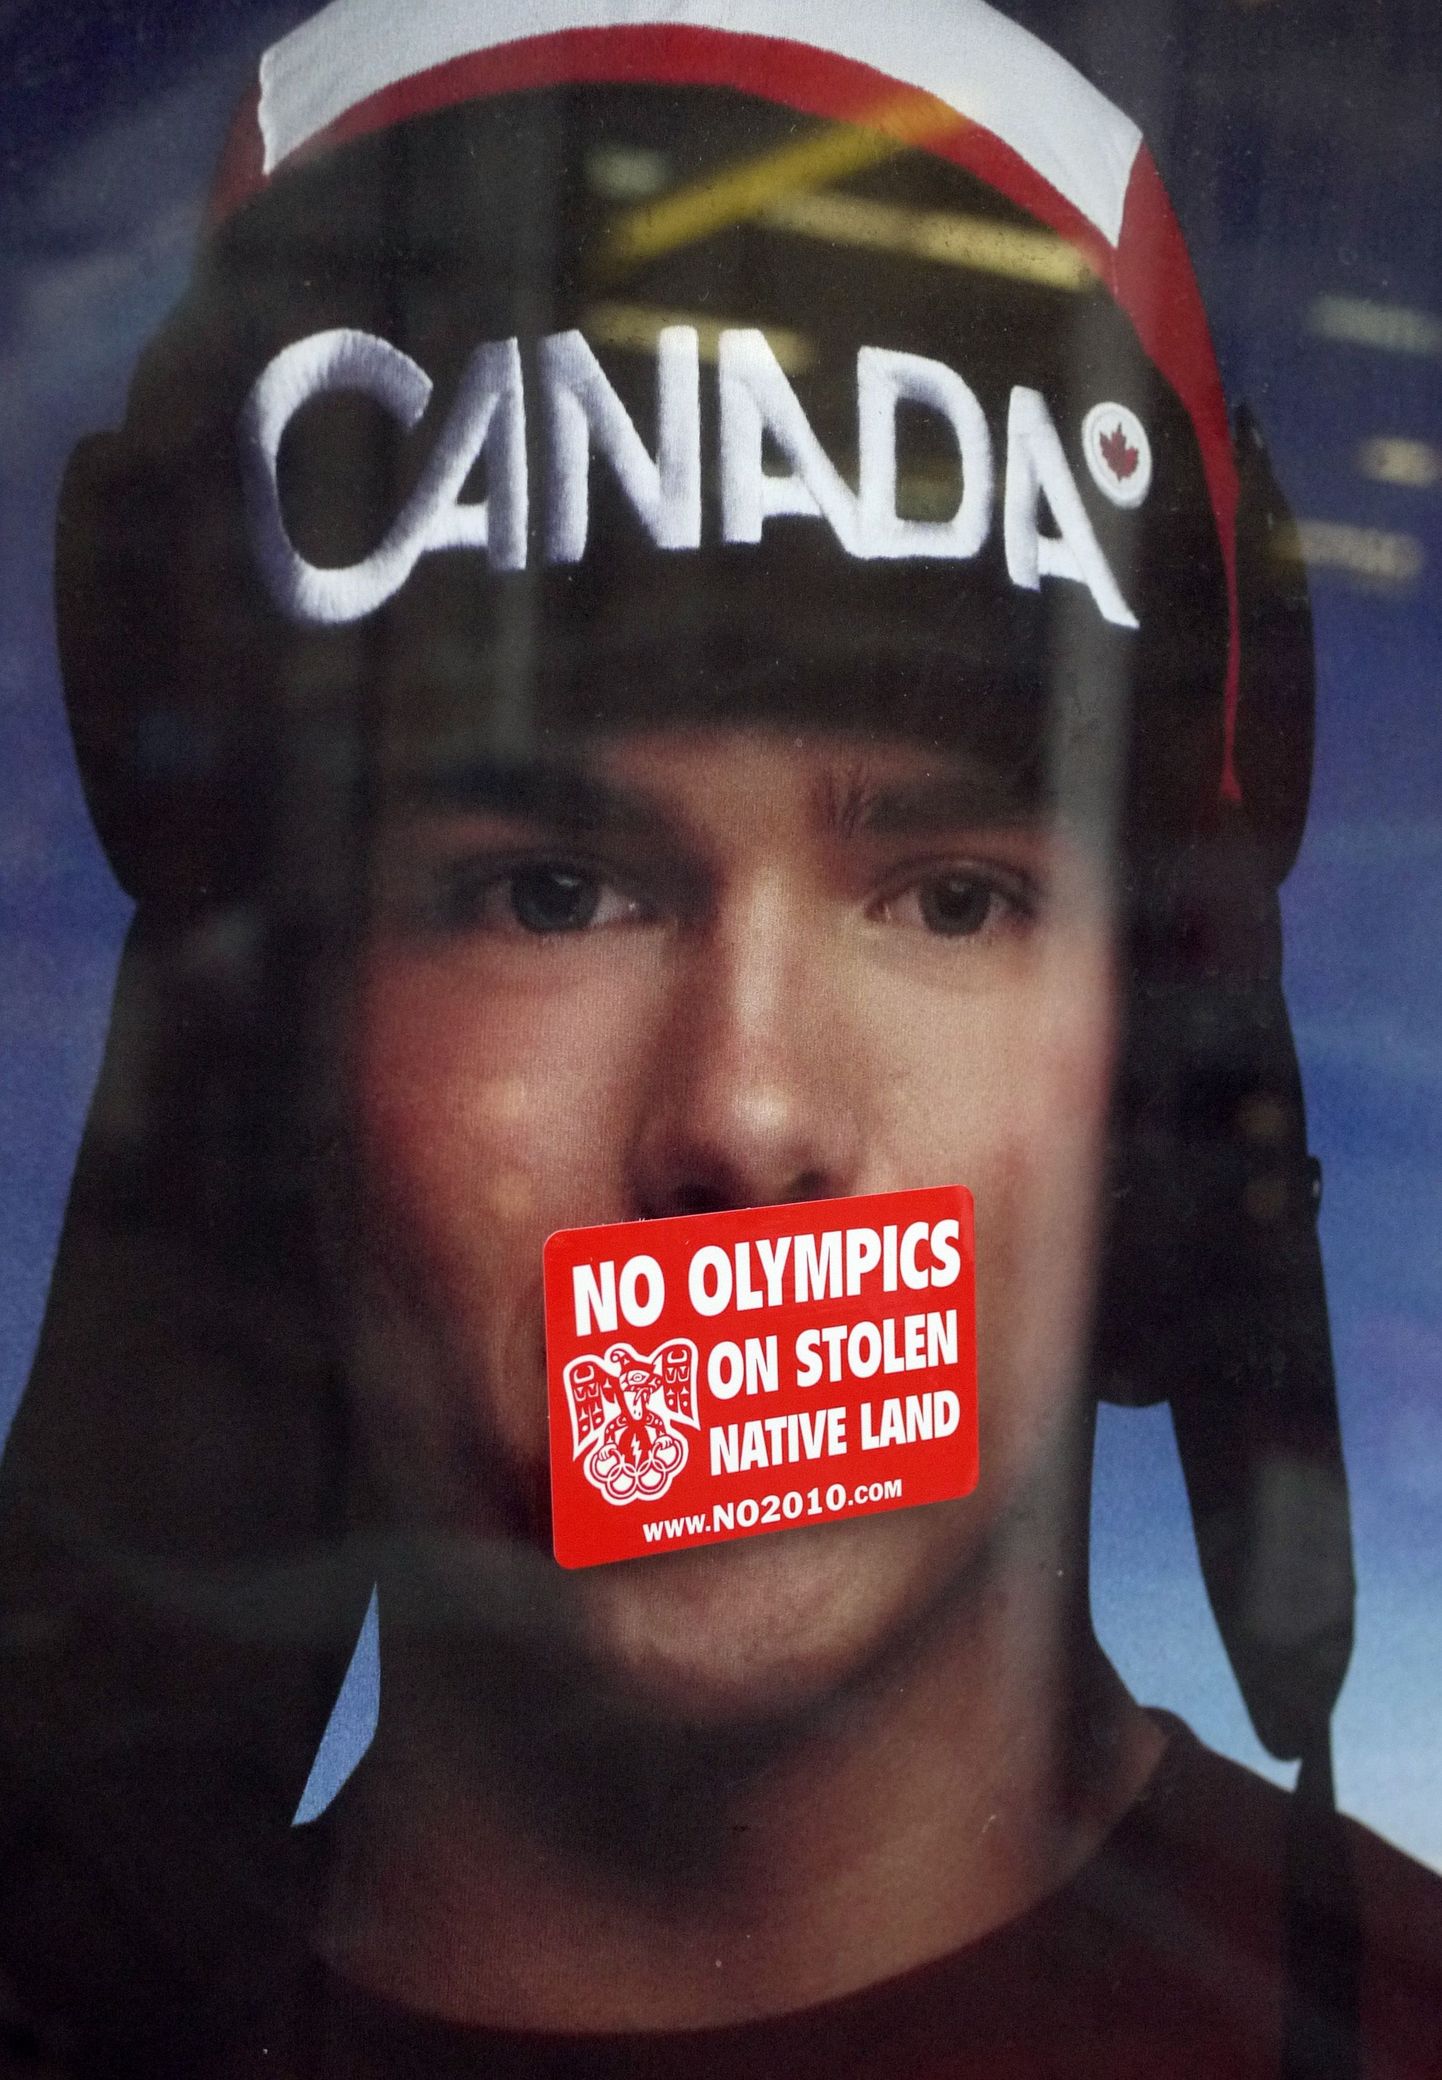 У всех своя мотивация протеста: "Никакой Олимпиады на украденной родной земле!" - гласит этот плакат на автобусной остановке в Ванкувере.